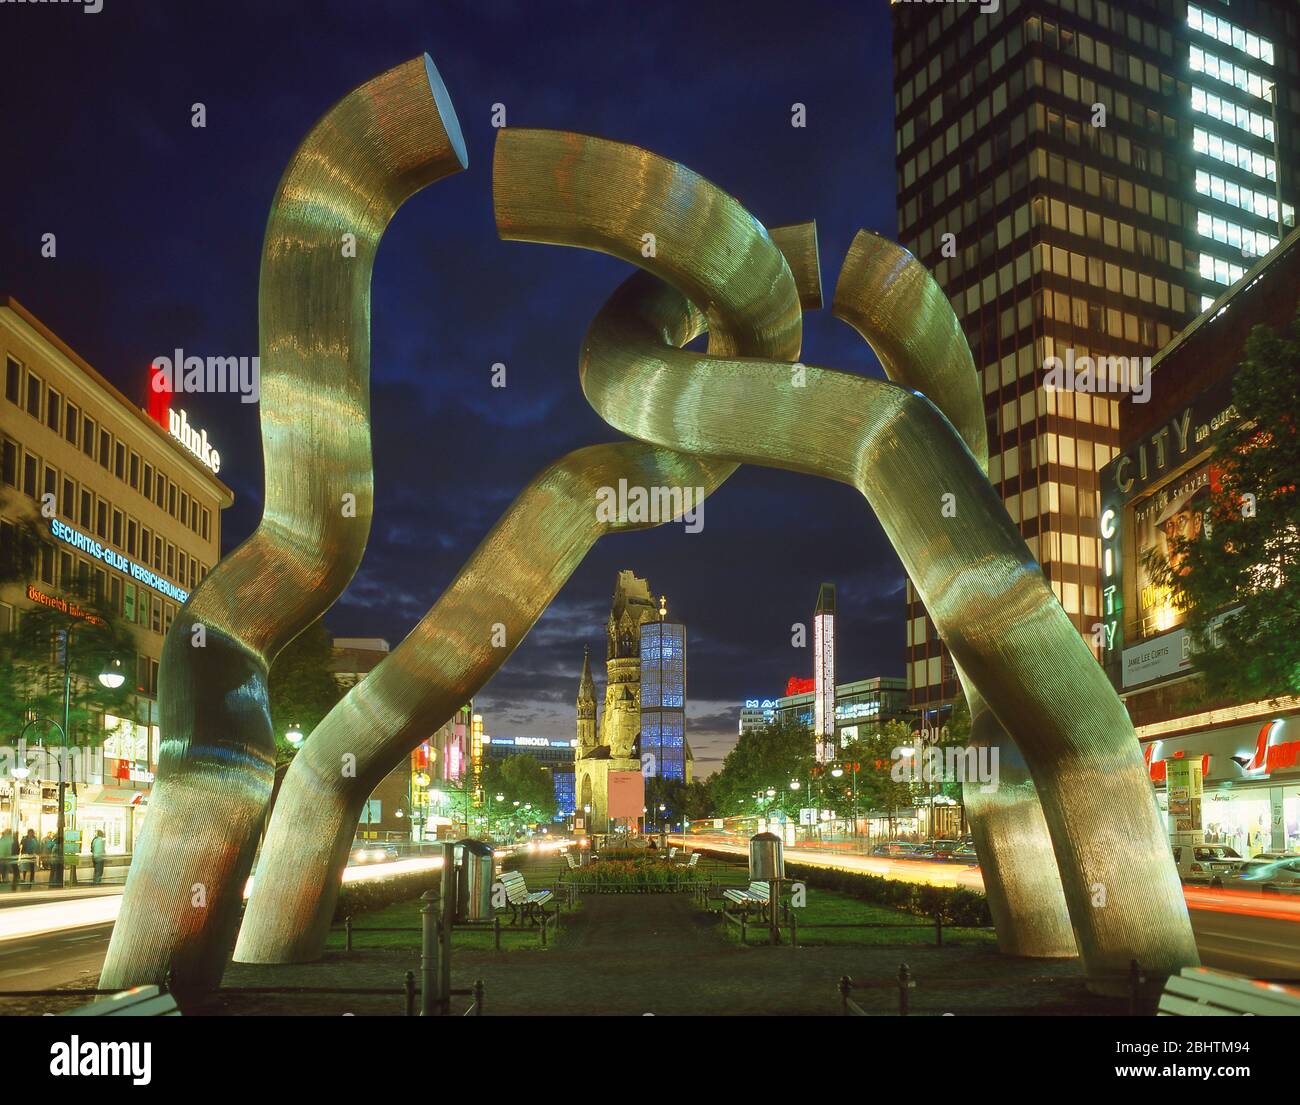 Sculpture en chaîne cassée au crépuscule, Tauentzienstraße, Berlin, République fédérale d'Allemagne Banque D'Images